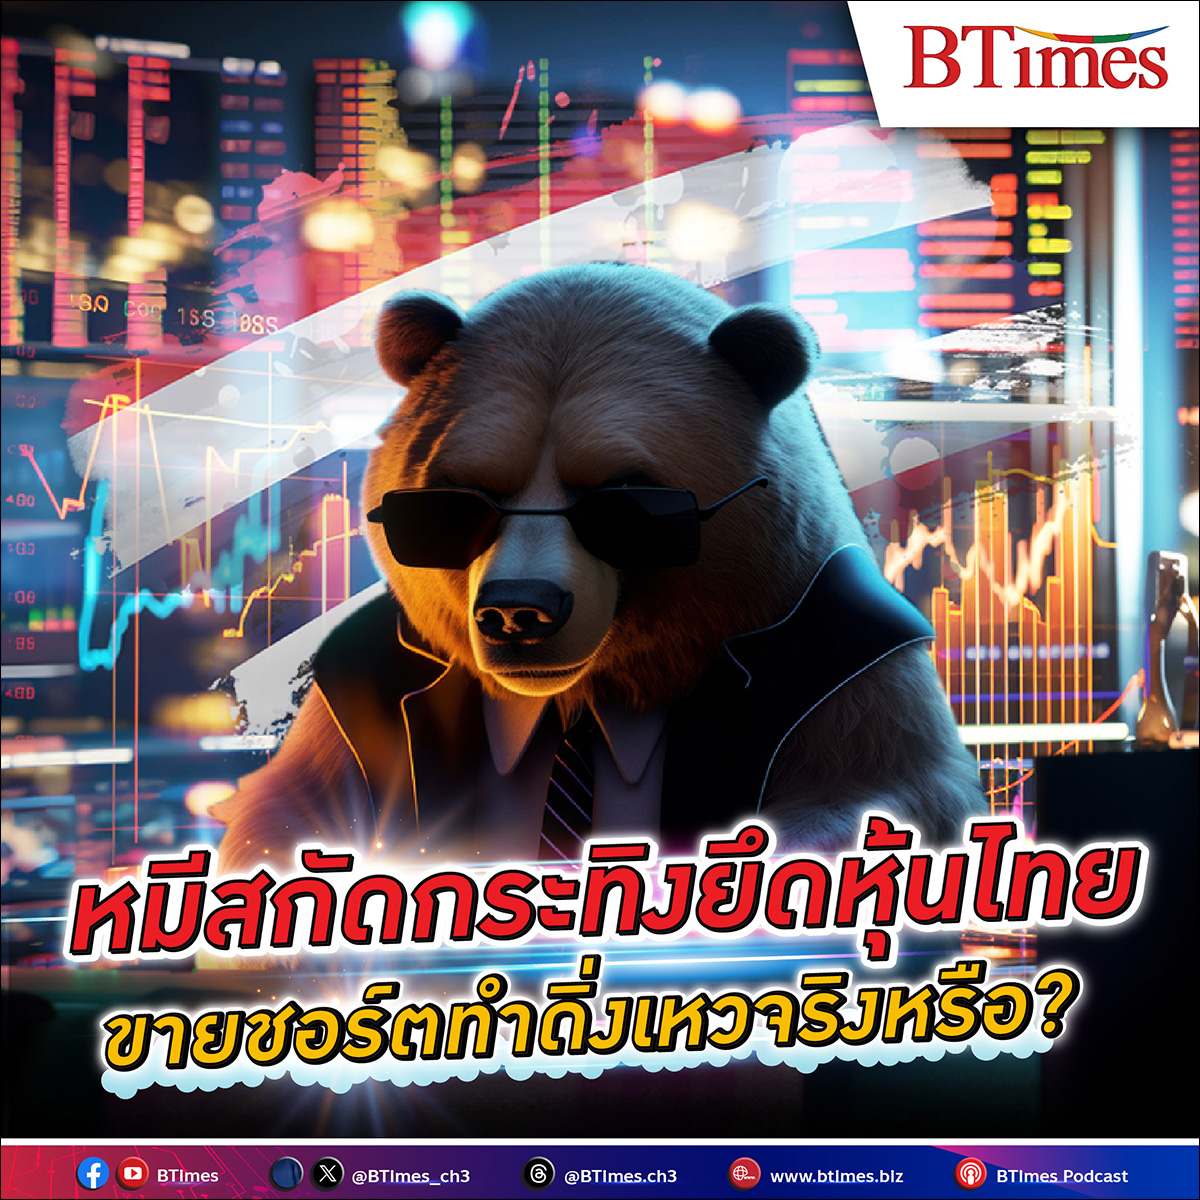 ทำไมนักลงทุนมอง หุ้นไทย ดิ่งเหว เพราะ ‘Short Selling’ เป็นตัวการใหญ่ แล้วเมื่อไรหุ้นไทยจะฟื้น หนี ตลาดหมี วิ่งทะยานสู่ตลาดกระทิงได้สักที??